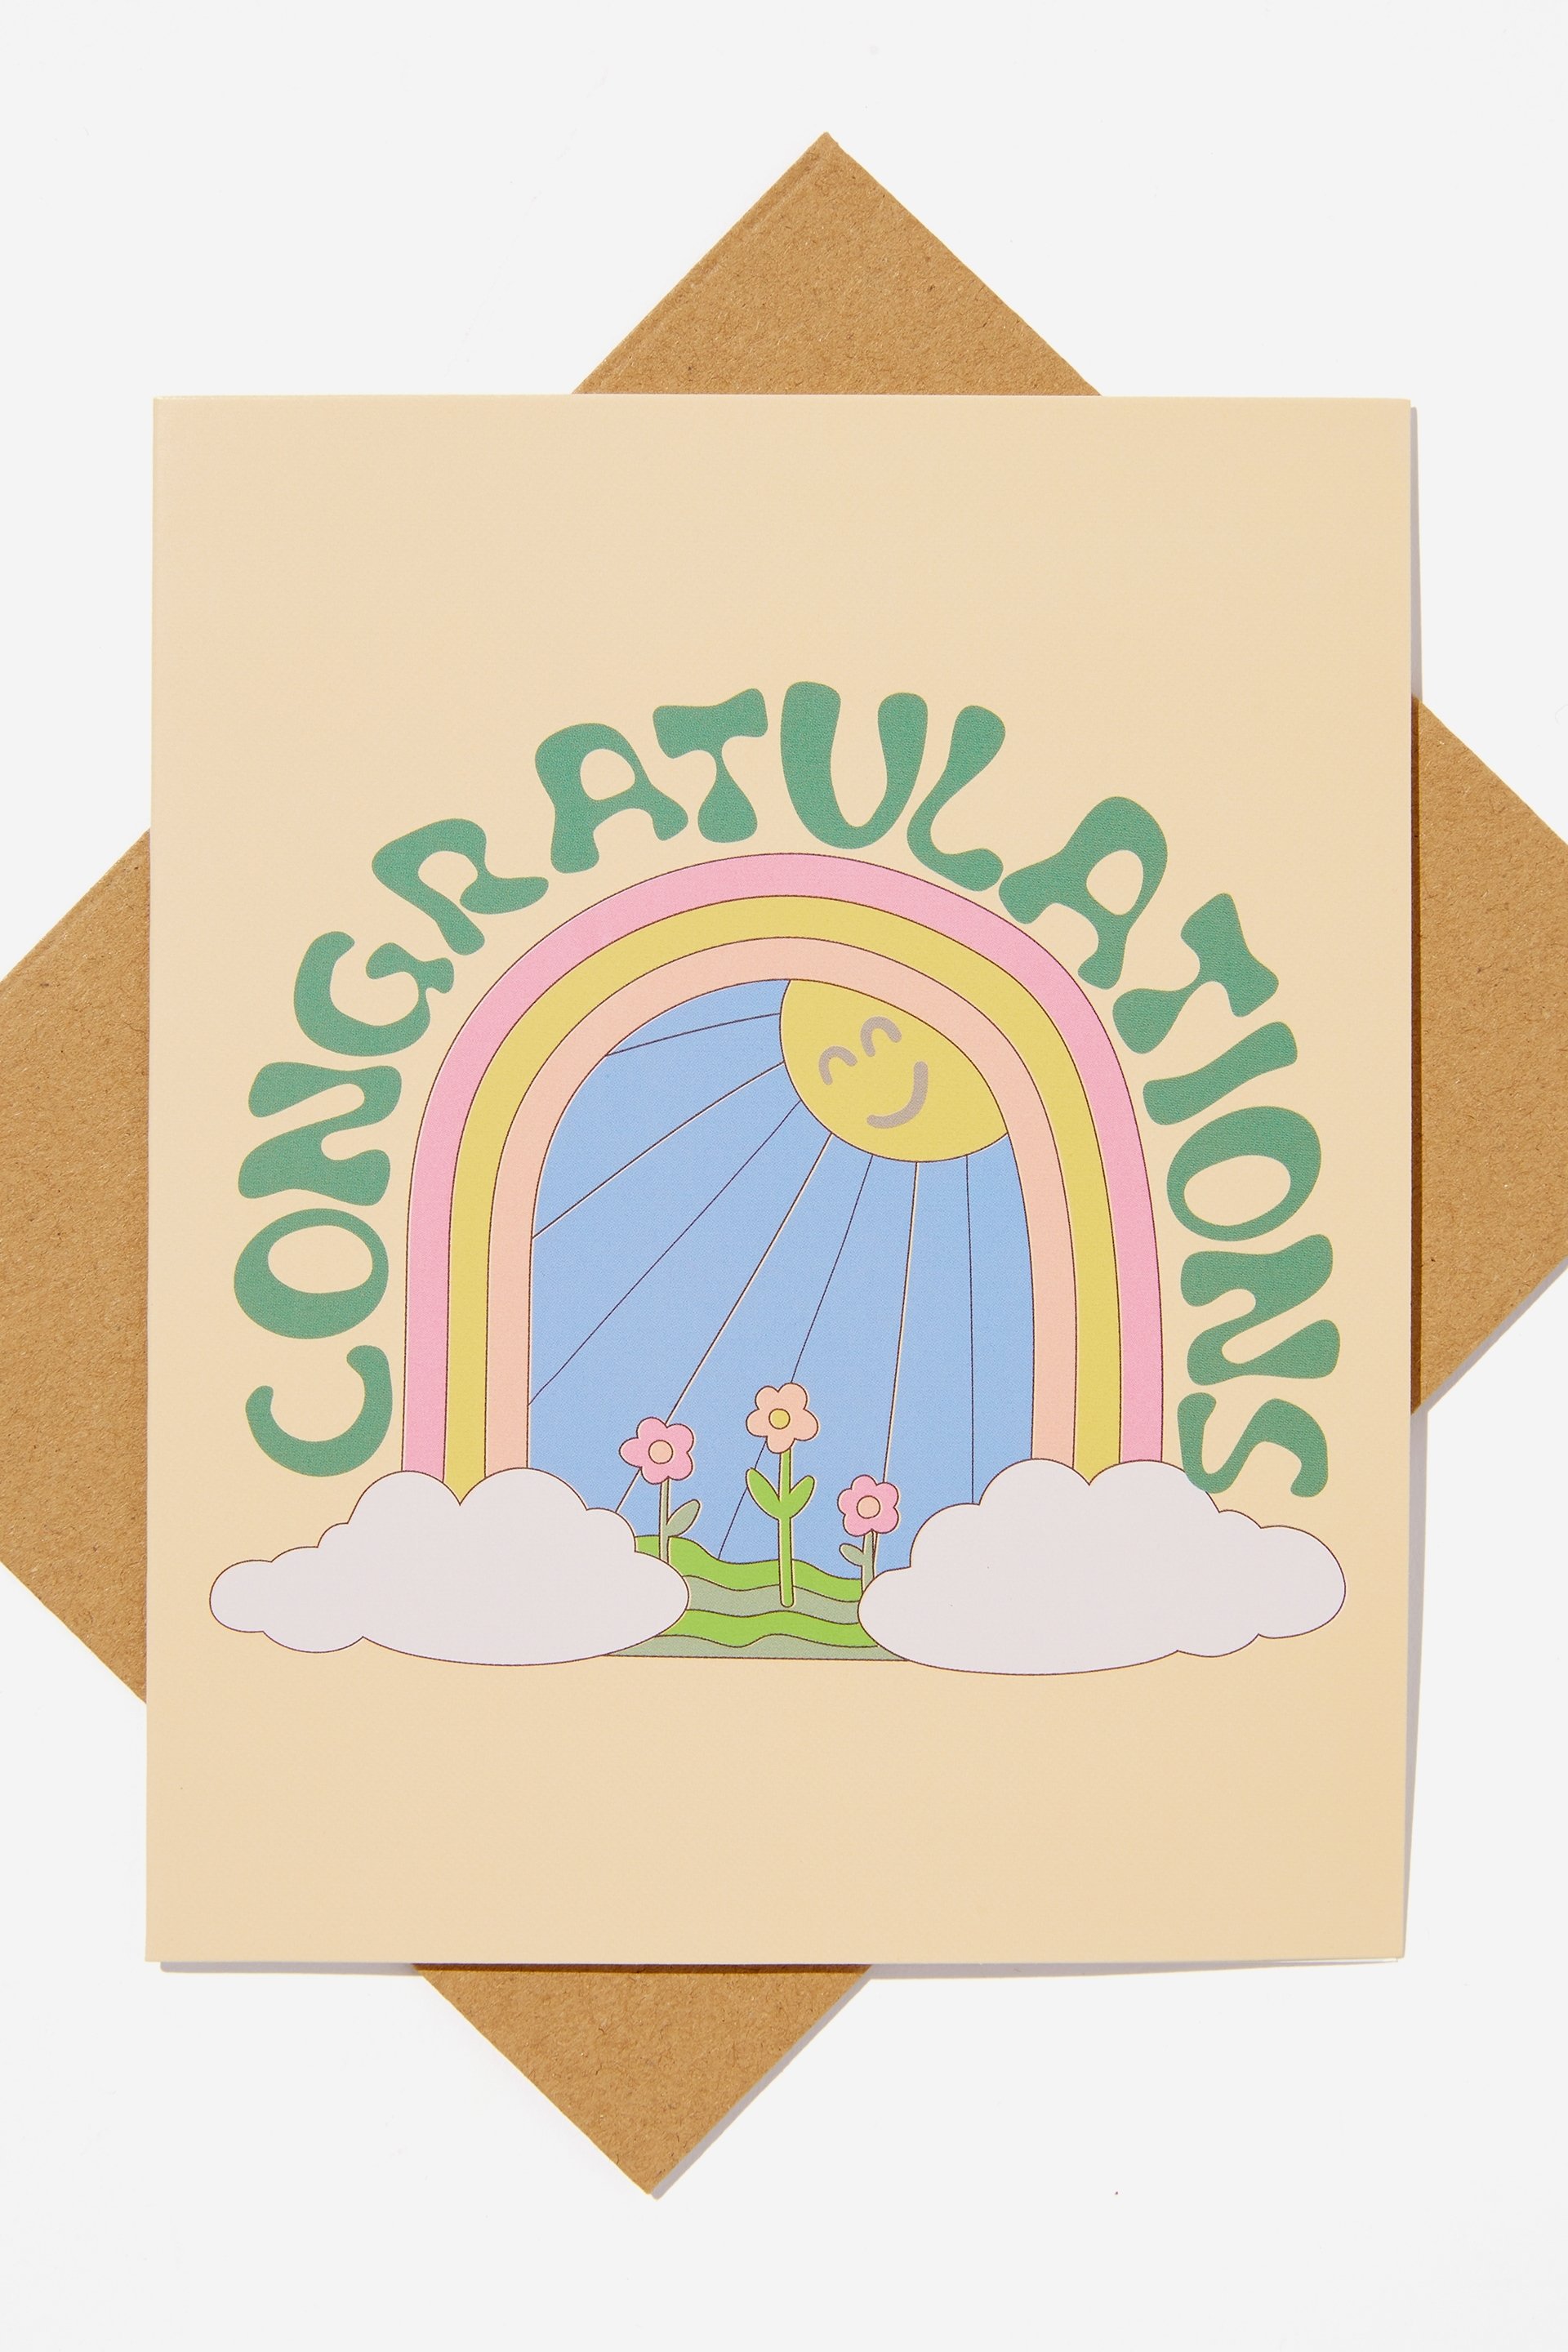 Typo - Congratulations Card - Congratulations rainbow